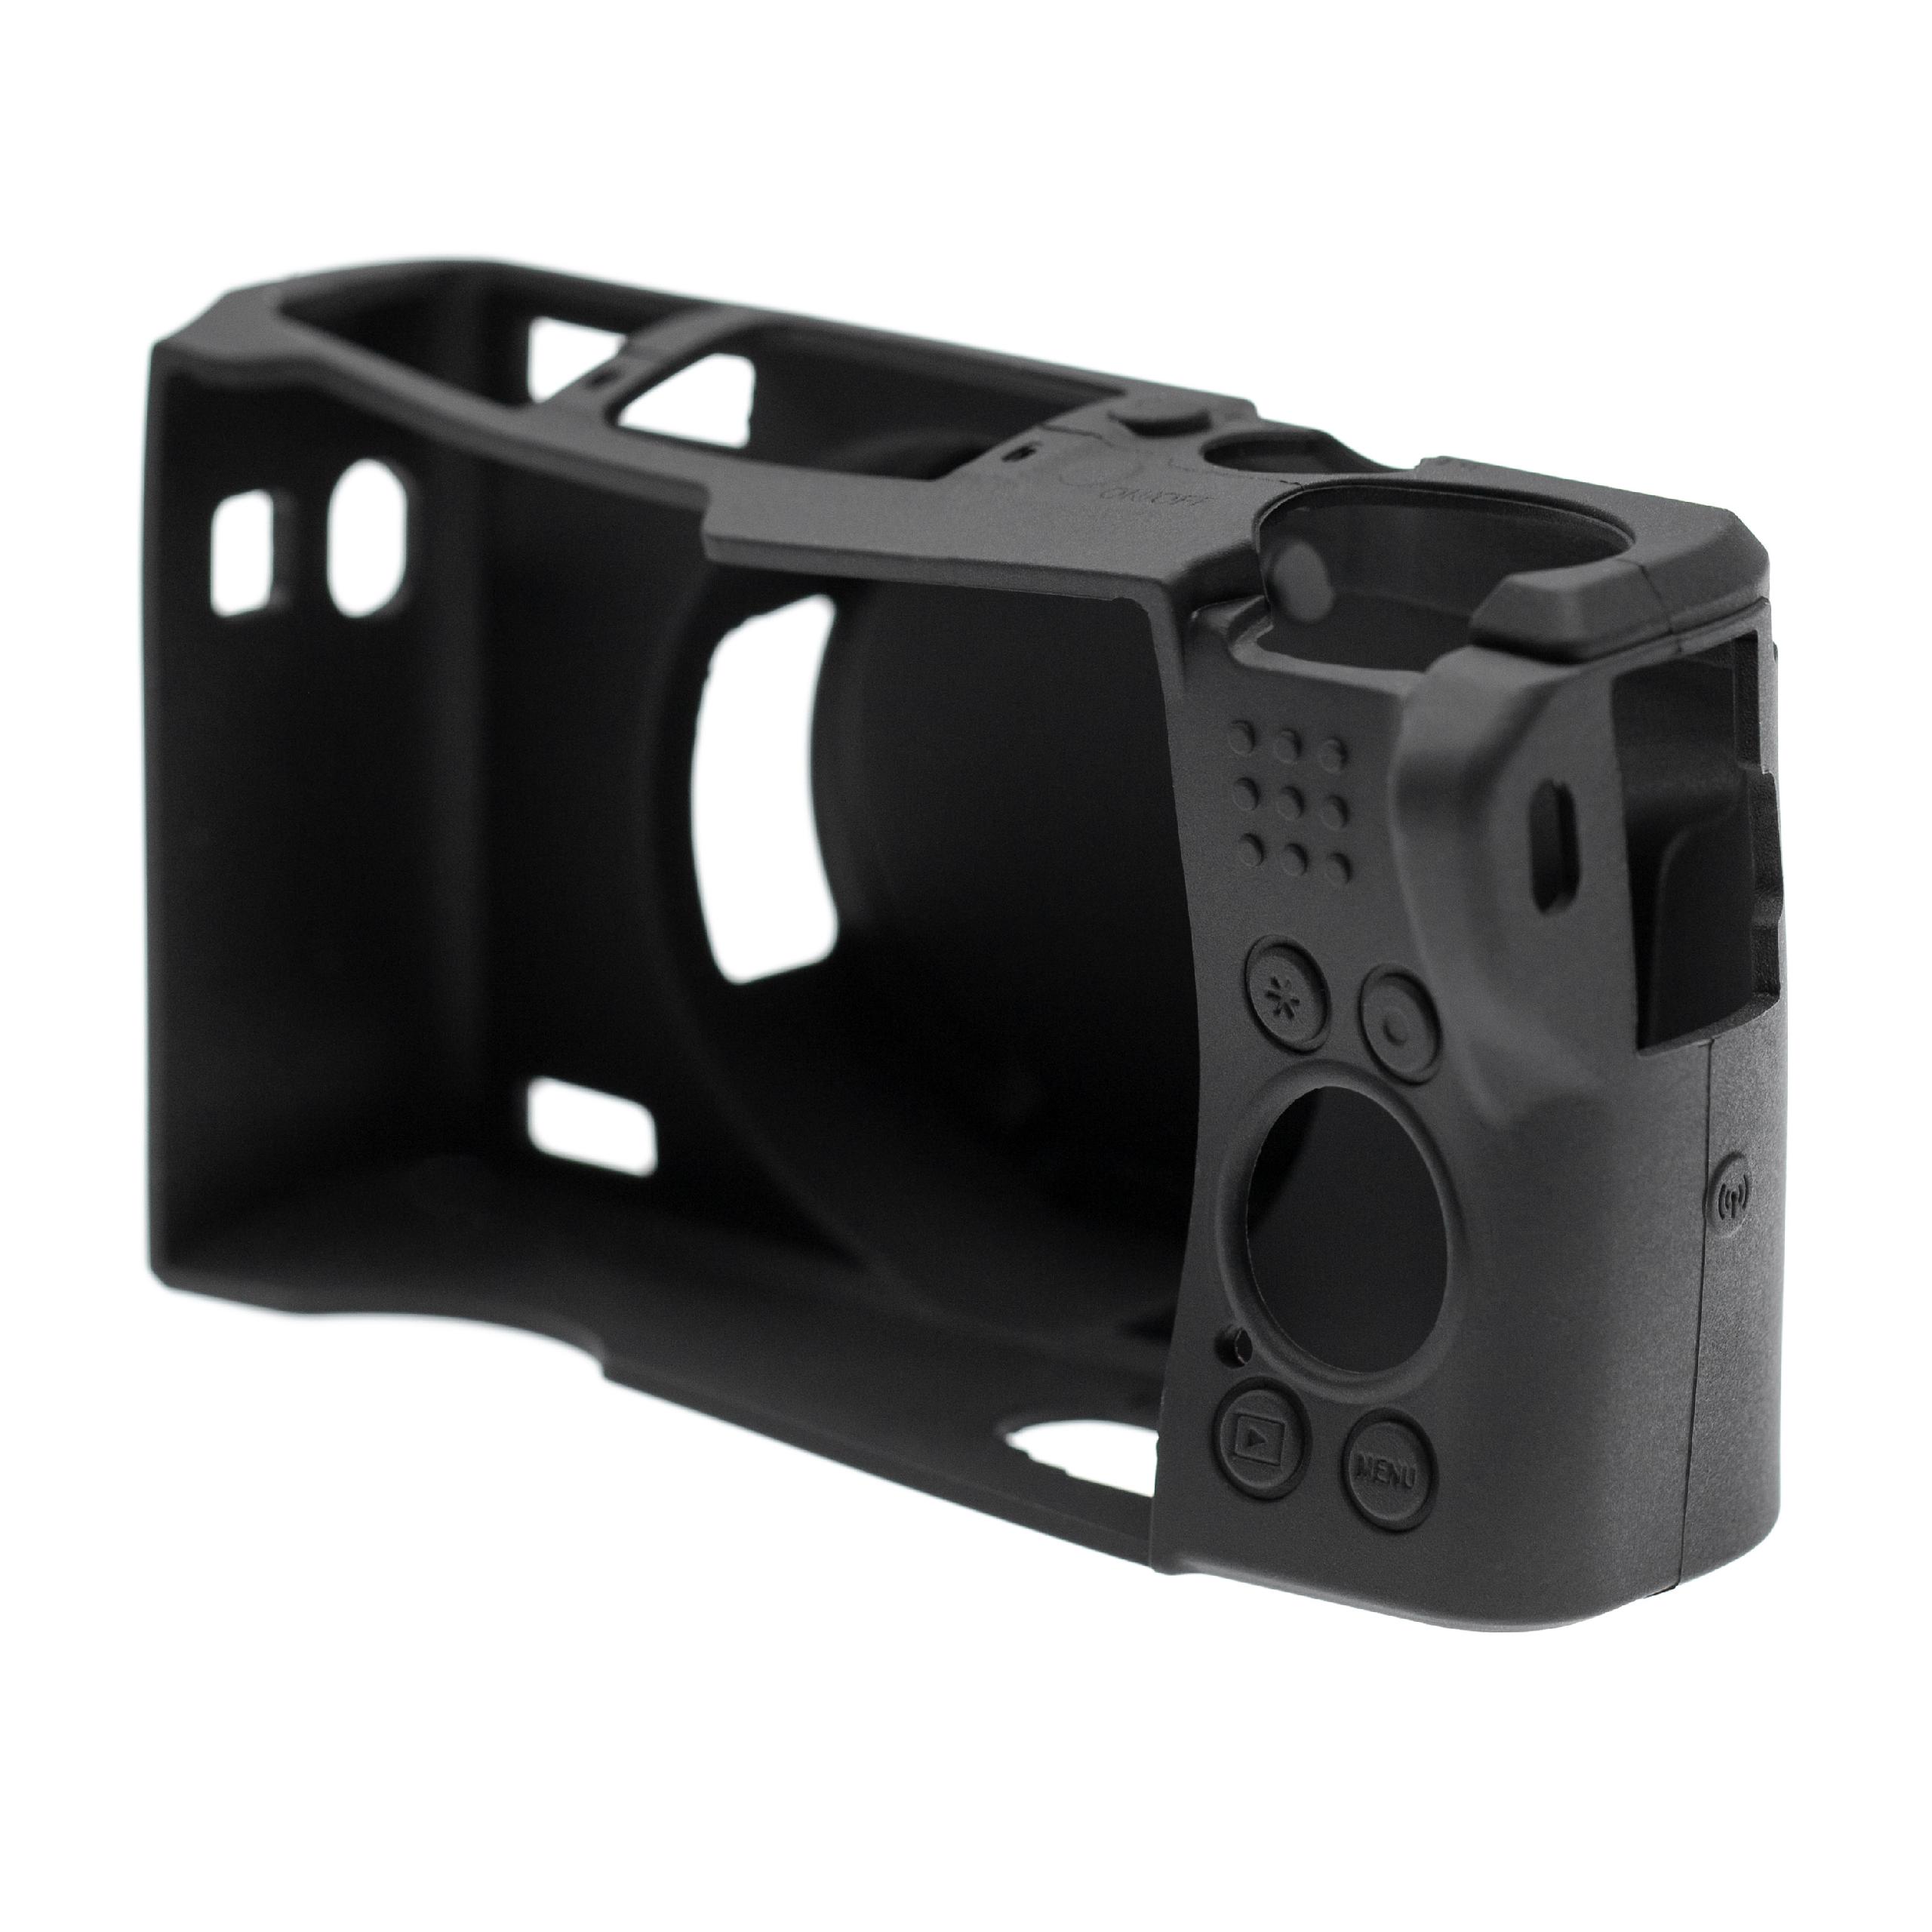 Custodia protettiva per Canon PowerShot G5X Mark II fotocamera - silicone nero, con protezione extra